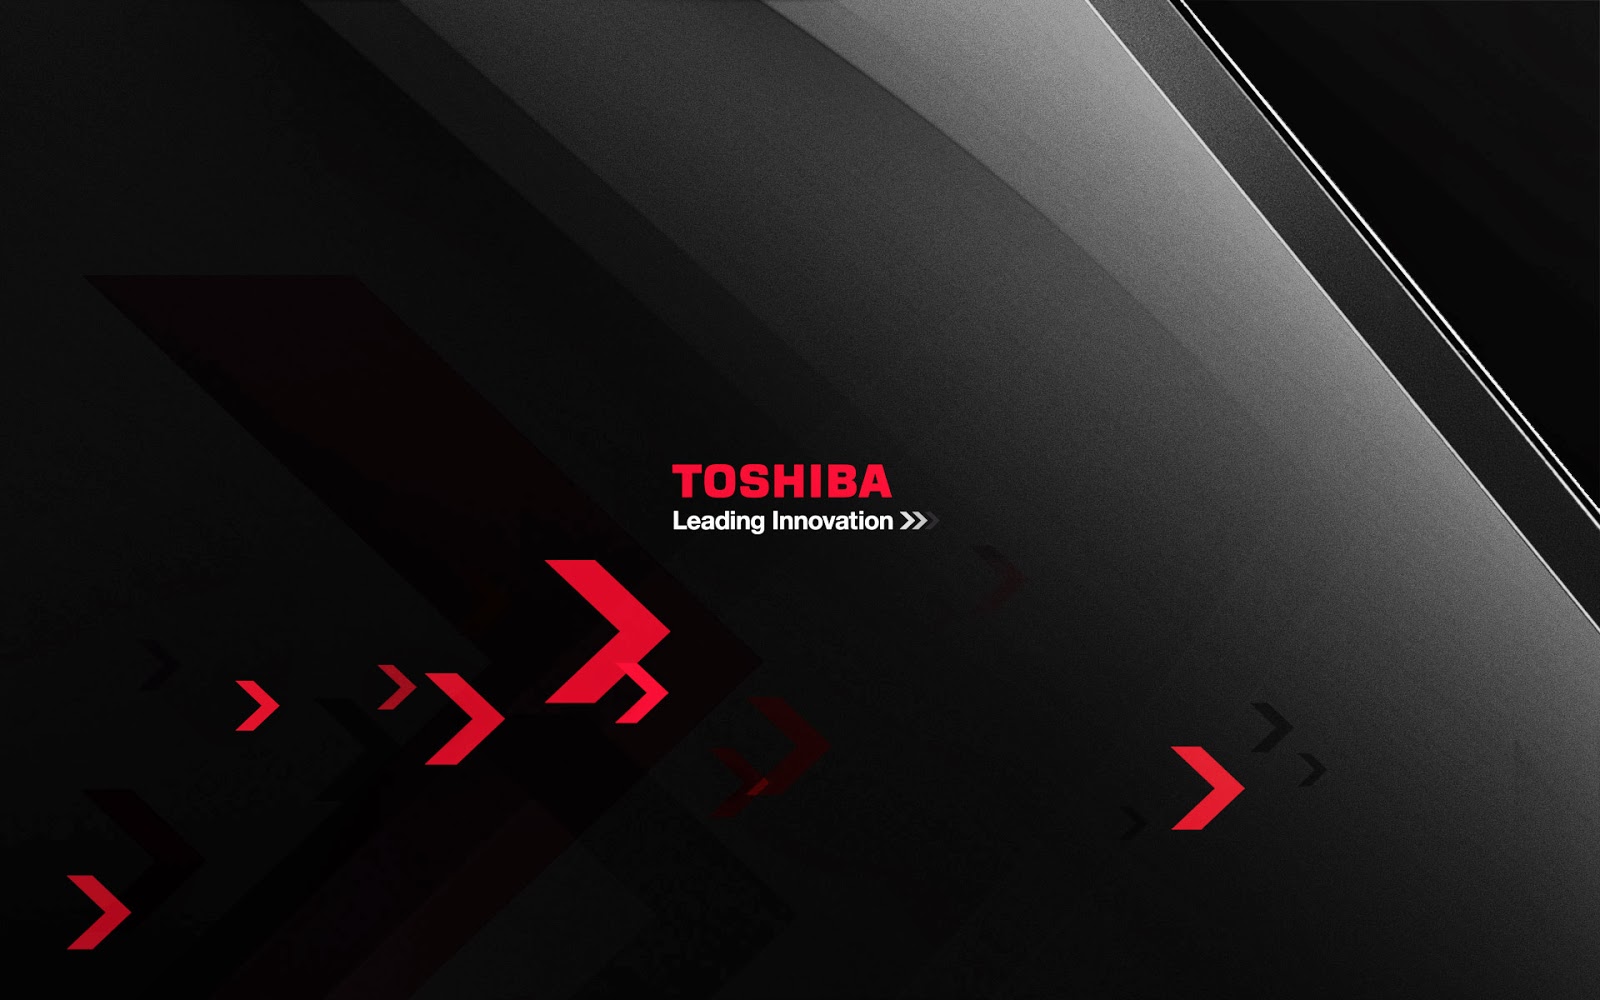 Toshiba HD Wallpaper Widescreen Technology